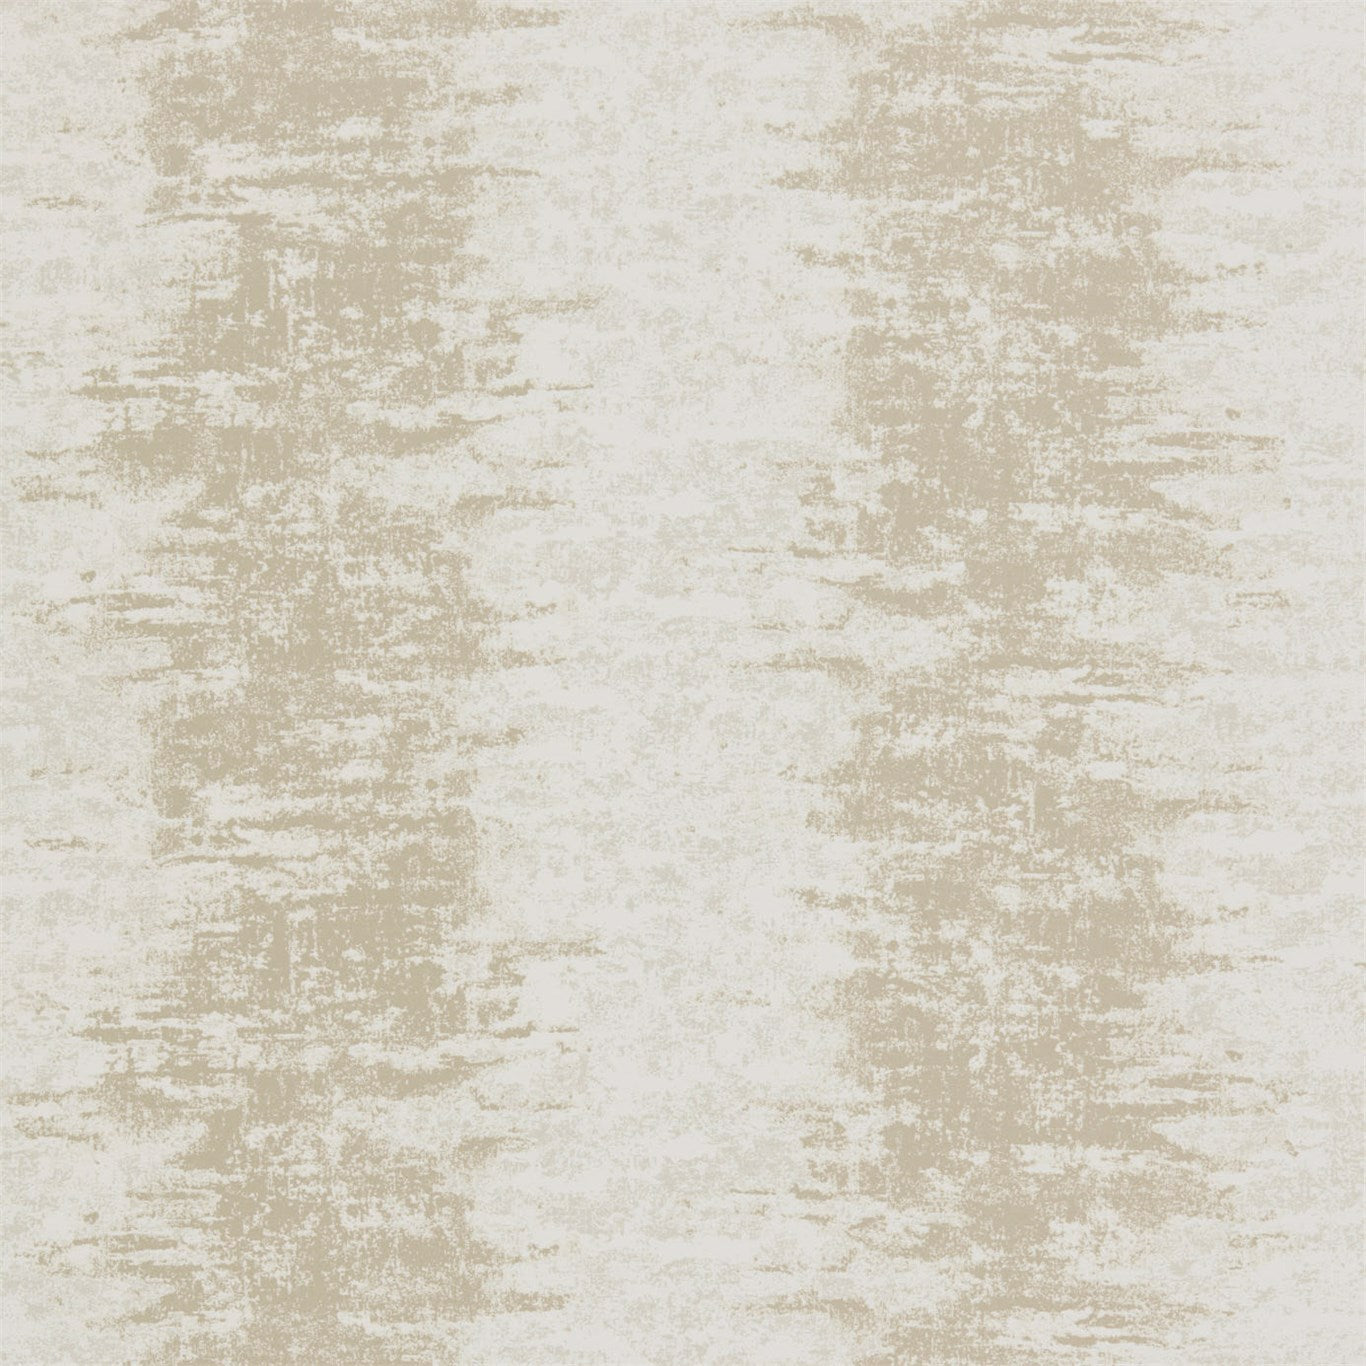 Pumice Ecru/Cream Wallpaper EANF111331 by Harlequin